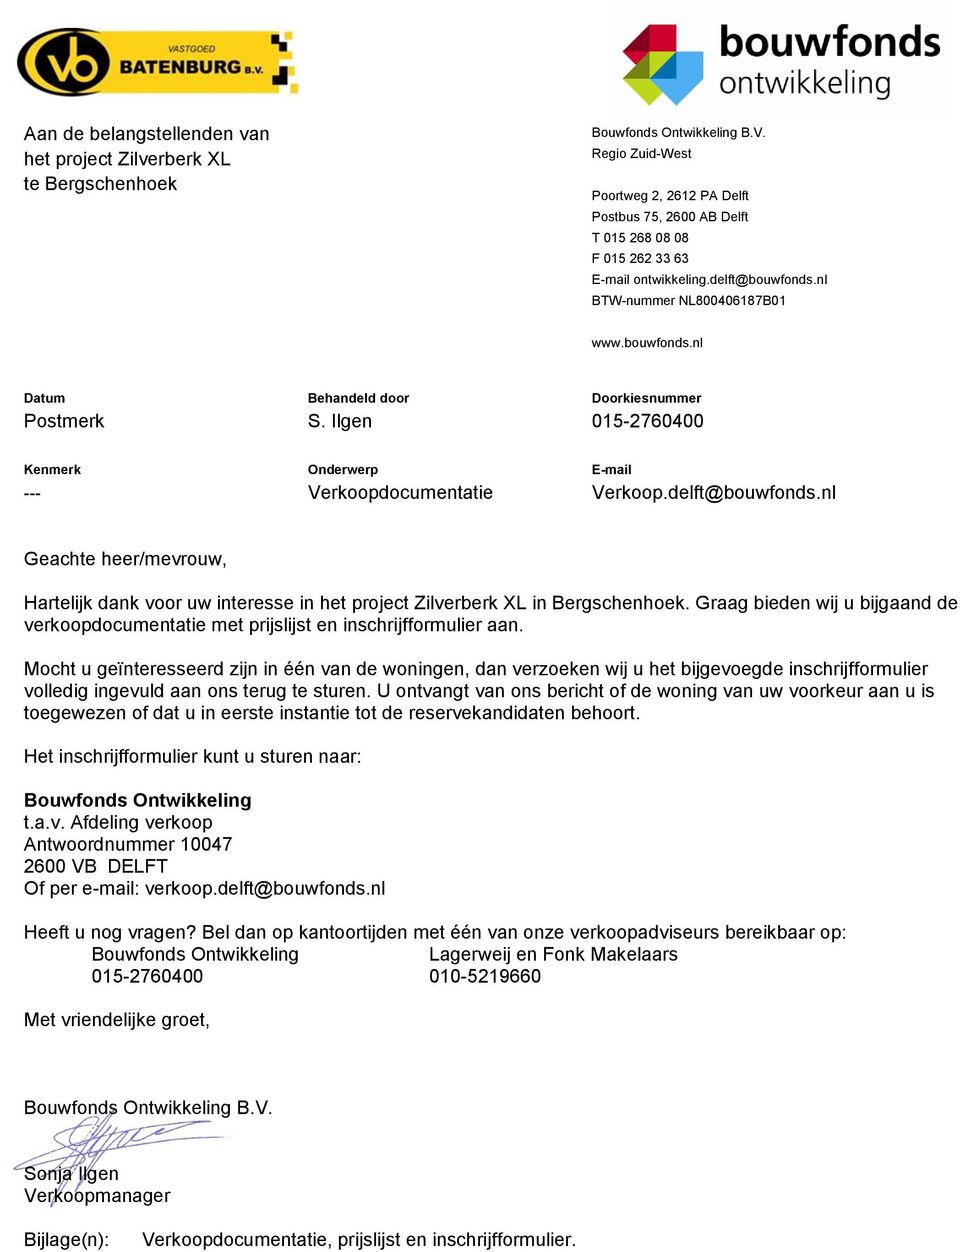 Ilgen 015-2760400 Kenmerk Onderwerp E-mail --- Verkoopdocumentatie Verkoop.delft@bouwfonds.nl Geachte heer/mevrouw, Hartelijk dank voor uw interesse in het project Zilverberk XL in Bergschenhoek.